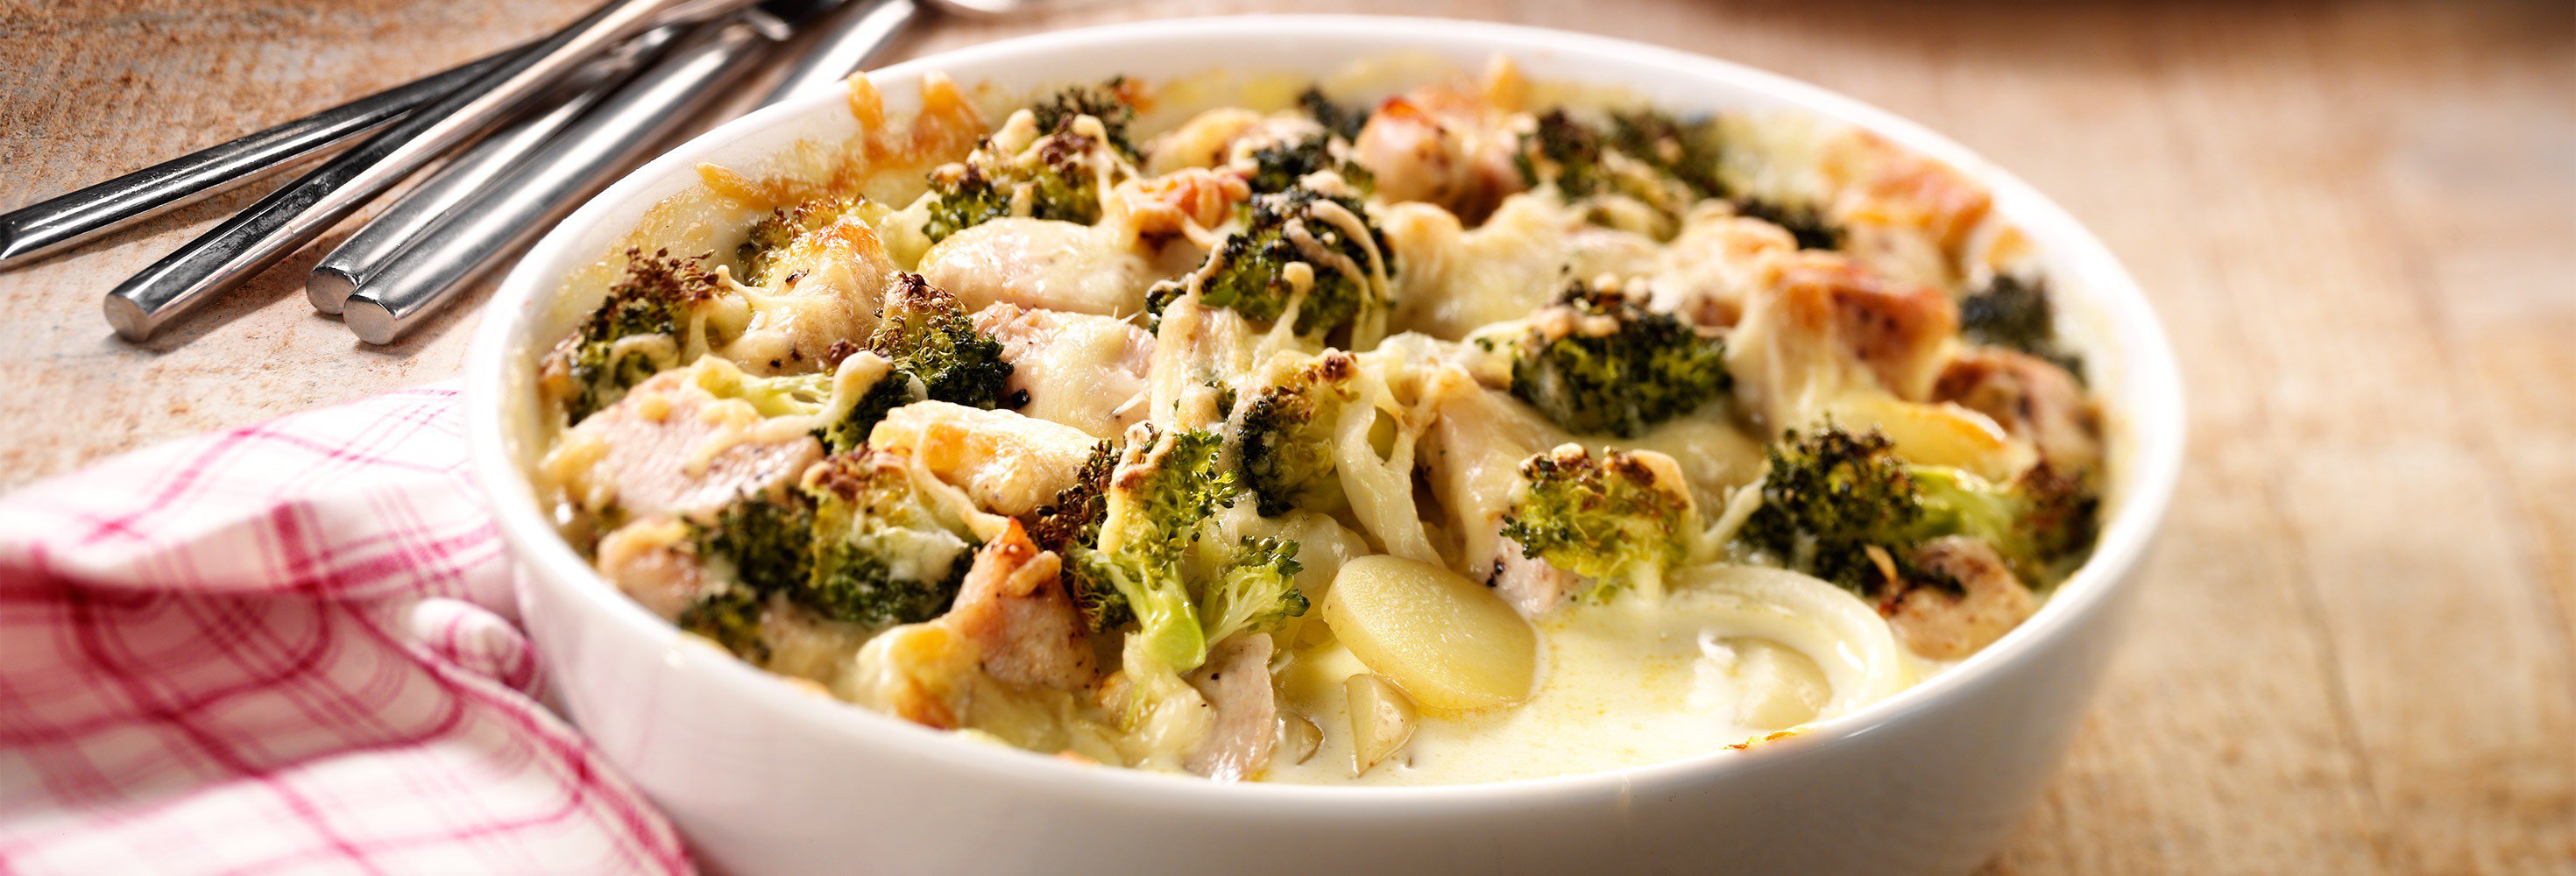 Romig aardappelstoofpotje met kip en broccoli